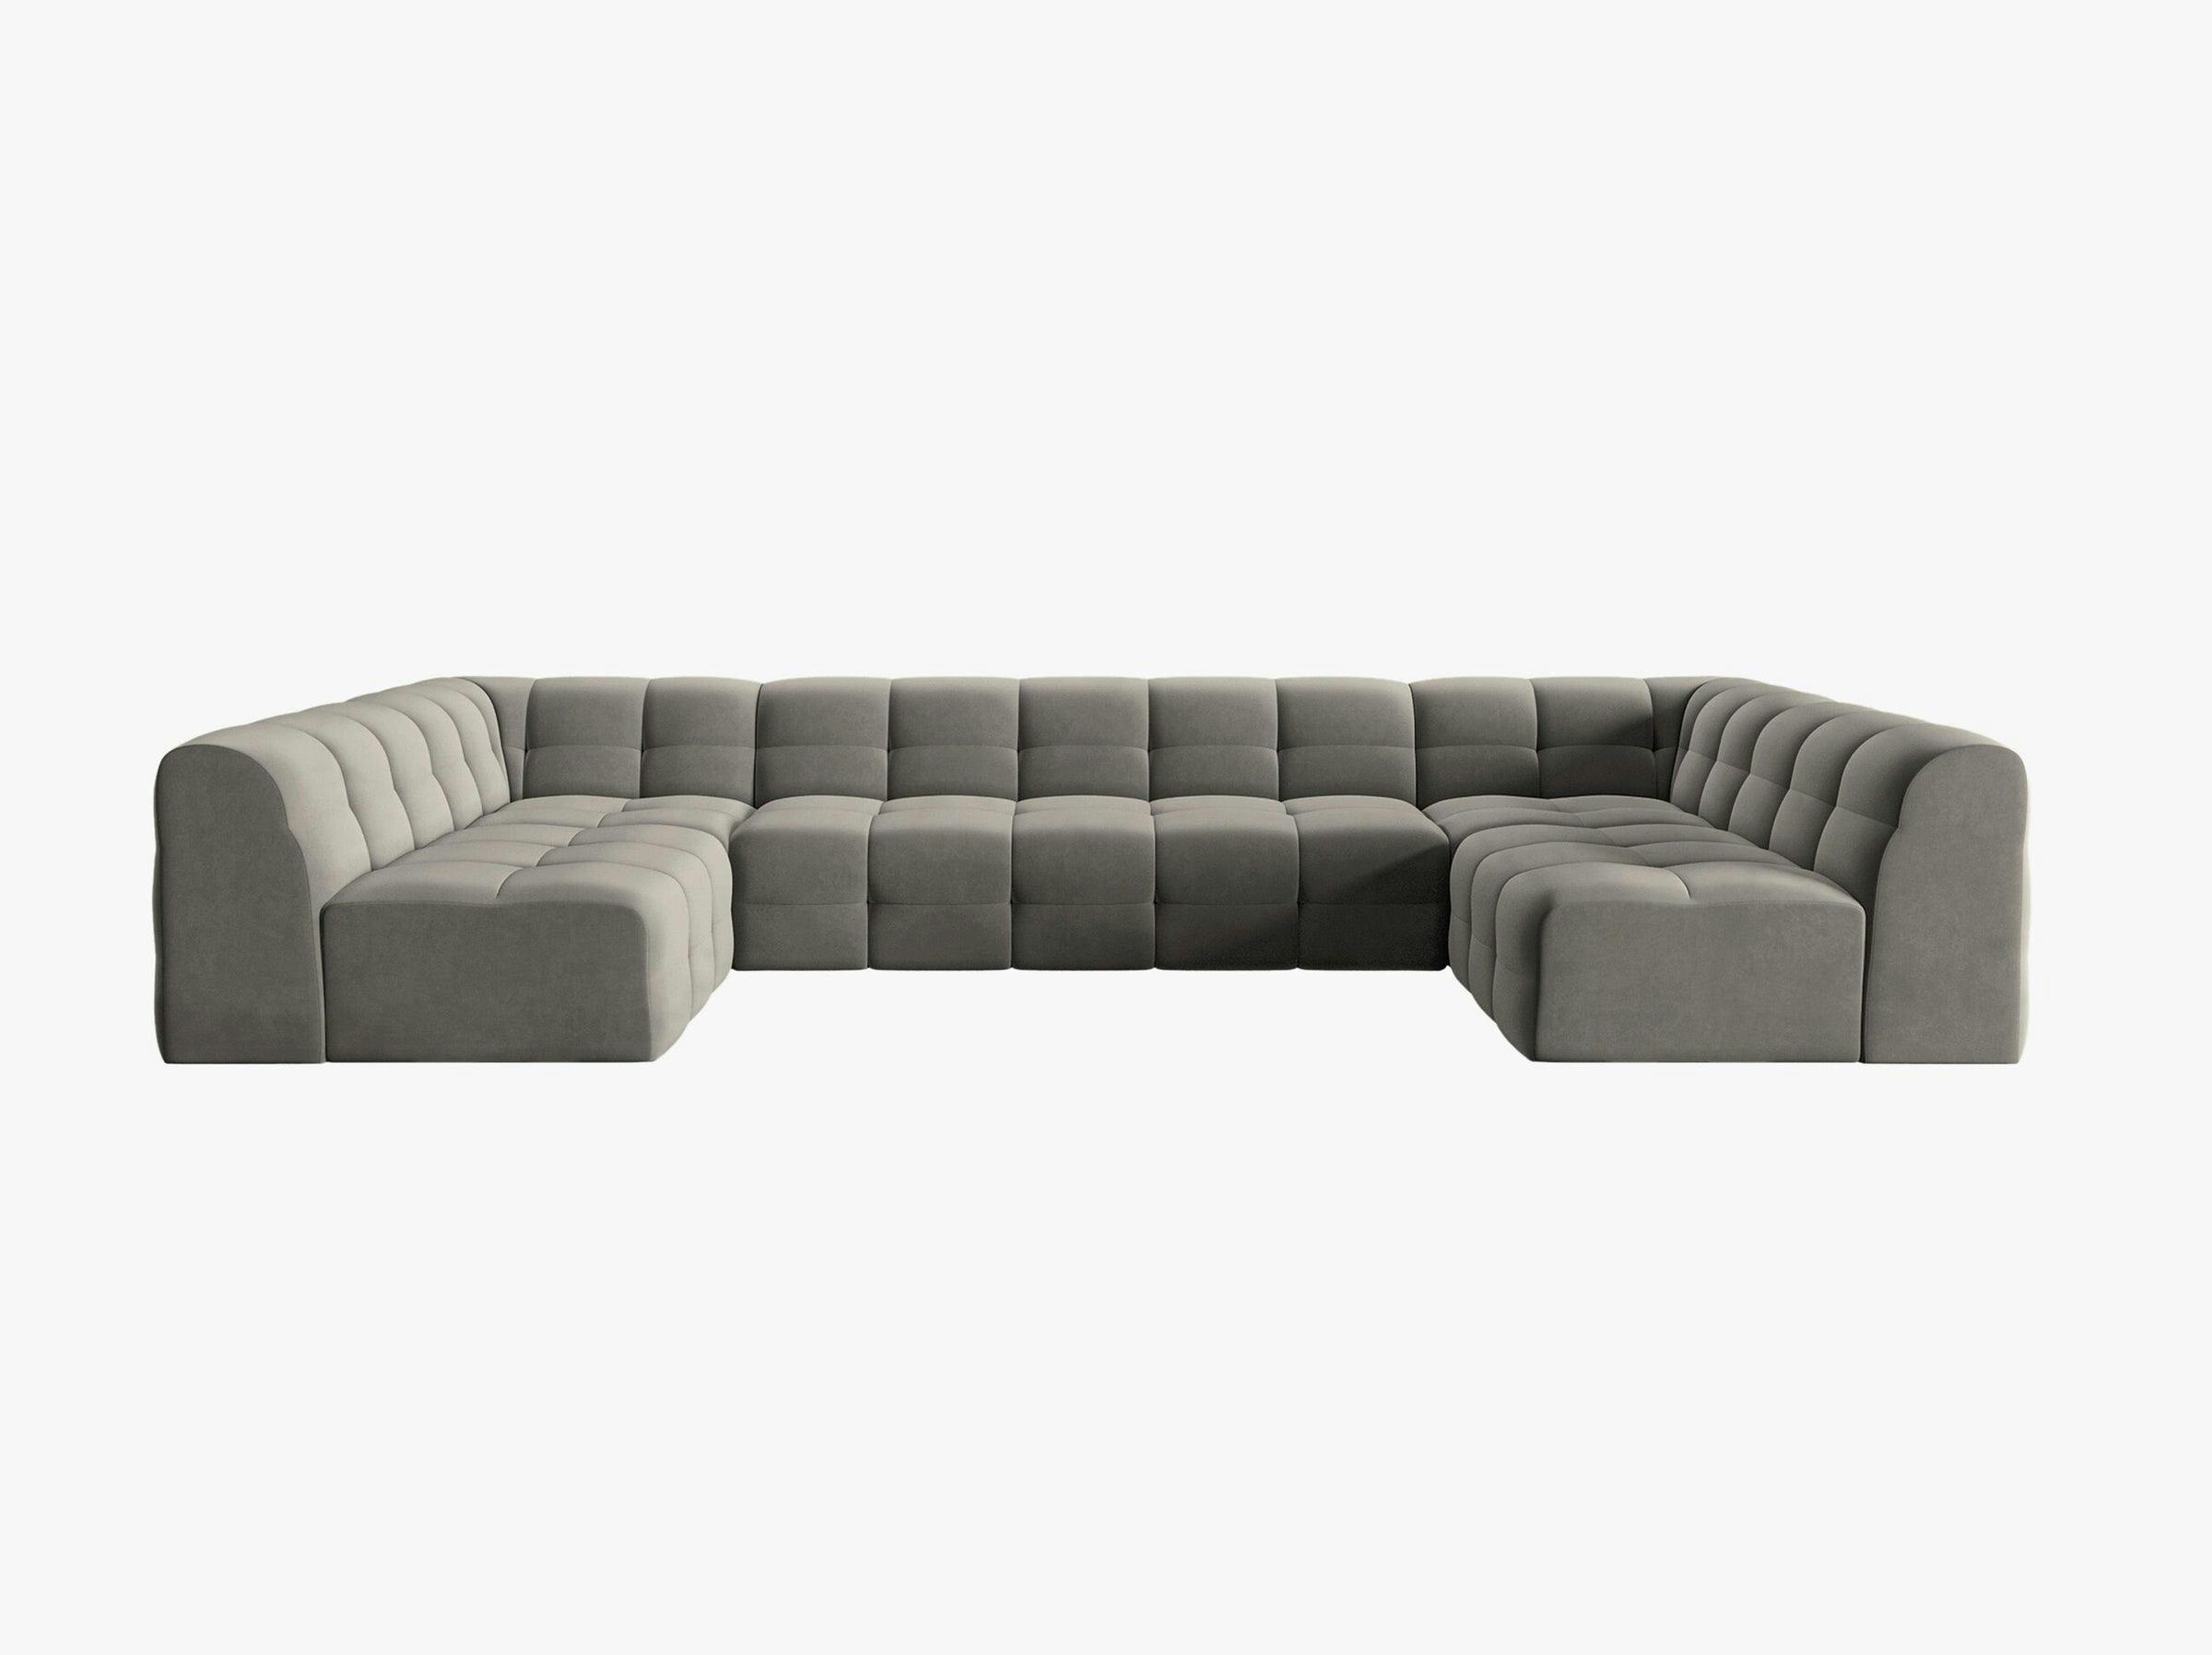 Kendal sofas velvet dark grey